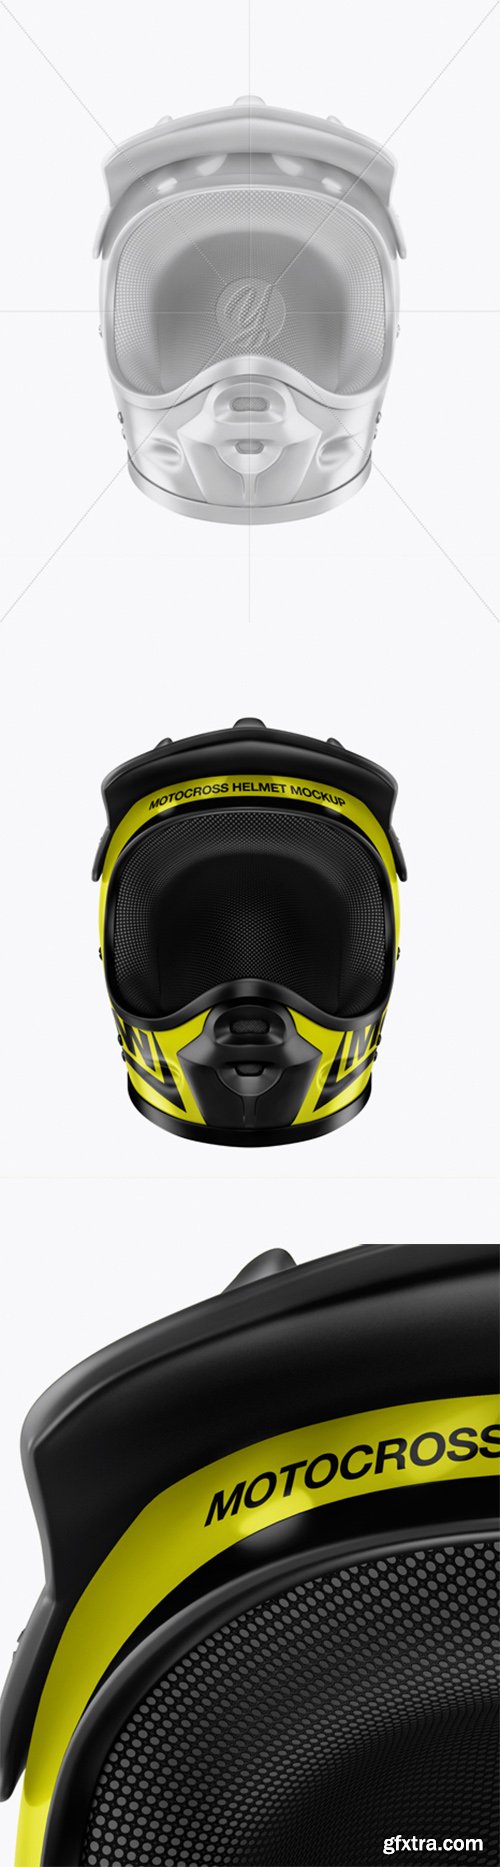 Download Motocross Helmet Mockup - Front View 21205 » GFxtra